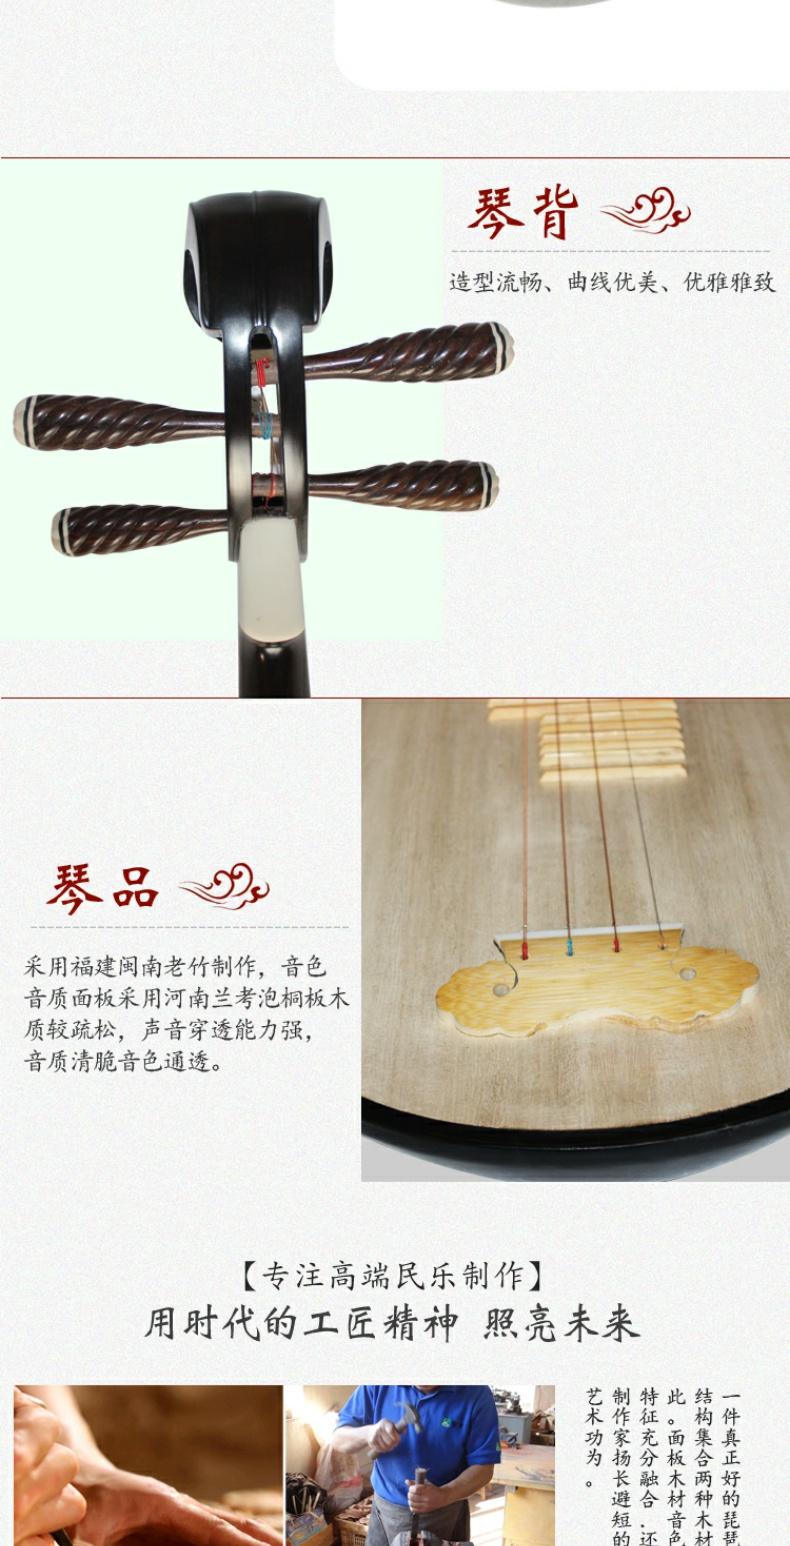 Cao cấp Xingyu gỗ mun pipa biểu diễn chuyên nghiệp bằng tay đánh bóng và đánh bóng nhạc cụ dân tộc - Nhạc cụ dân tộc